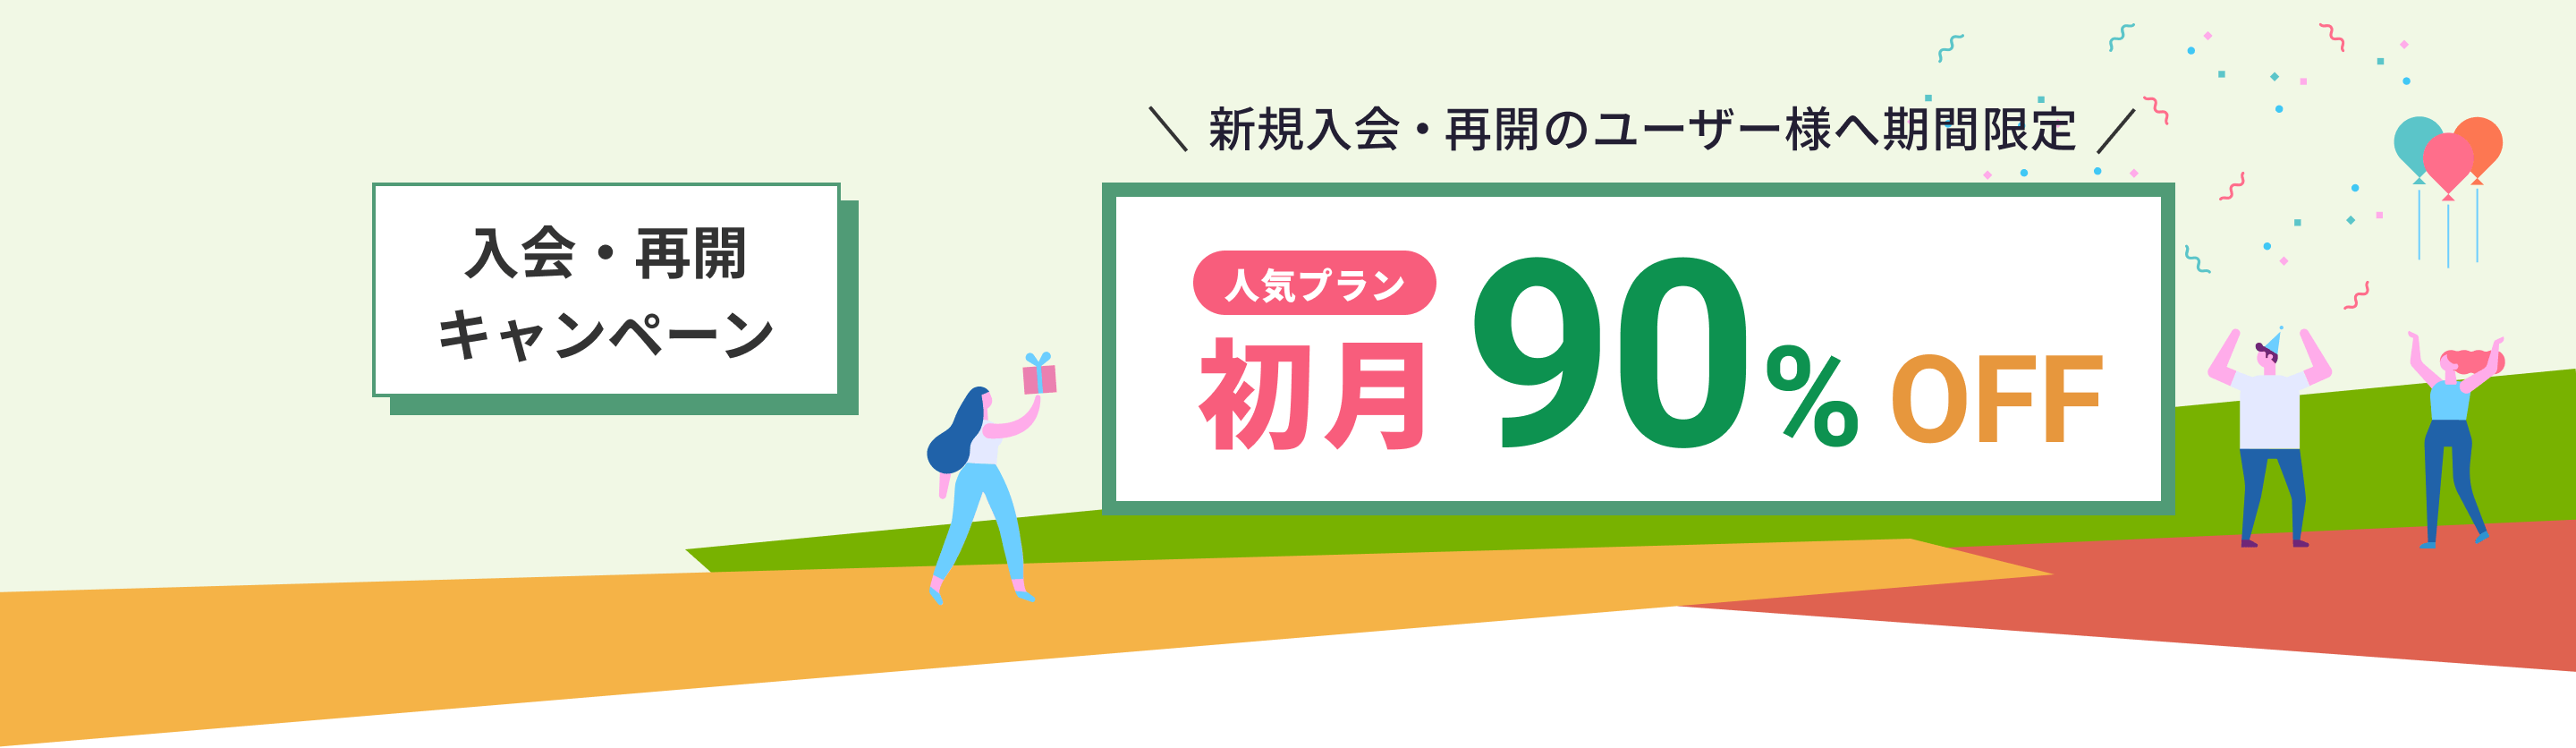 入会・再開キャンペーン 初月50%OFF